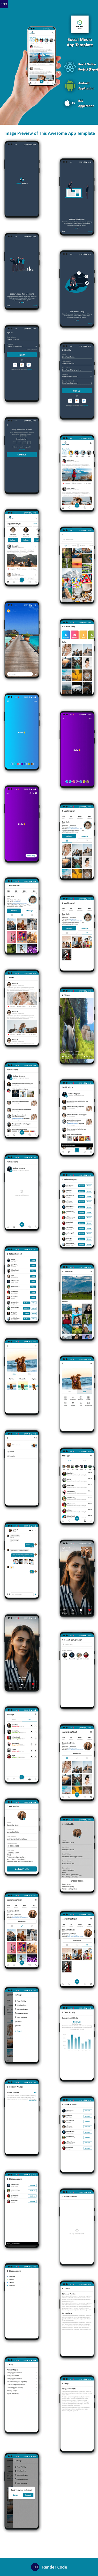 Instagram Clone App Template in React Native | Social sharing App | Video sharing app | SocialMedia - 4